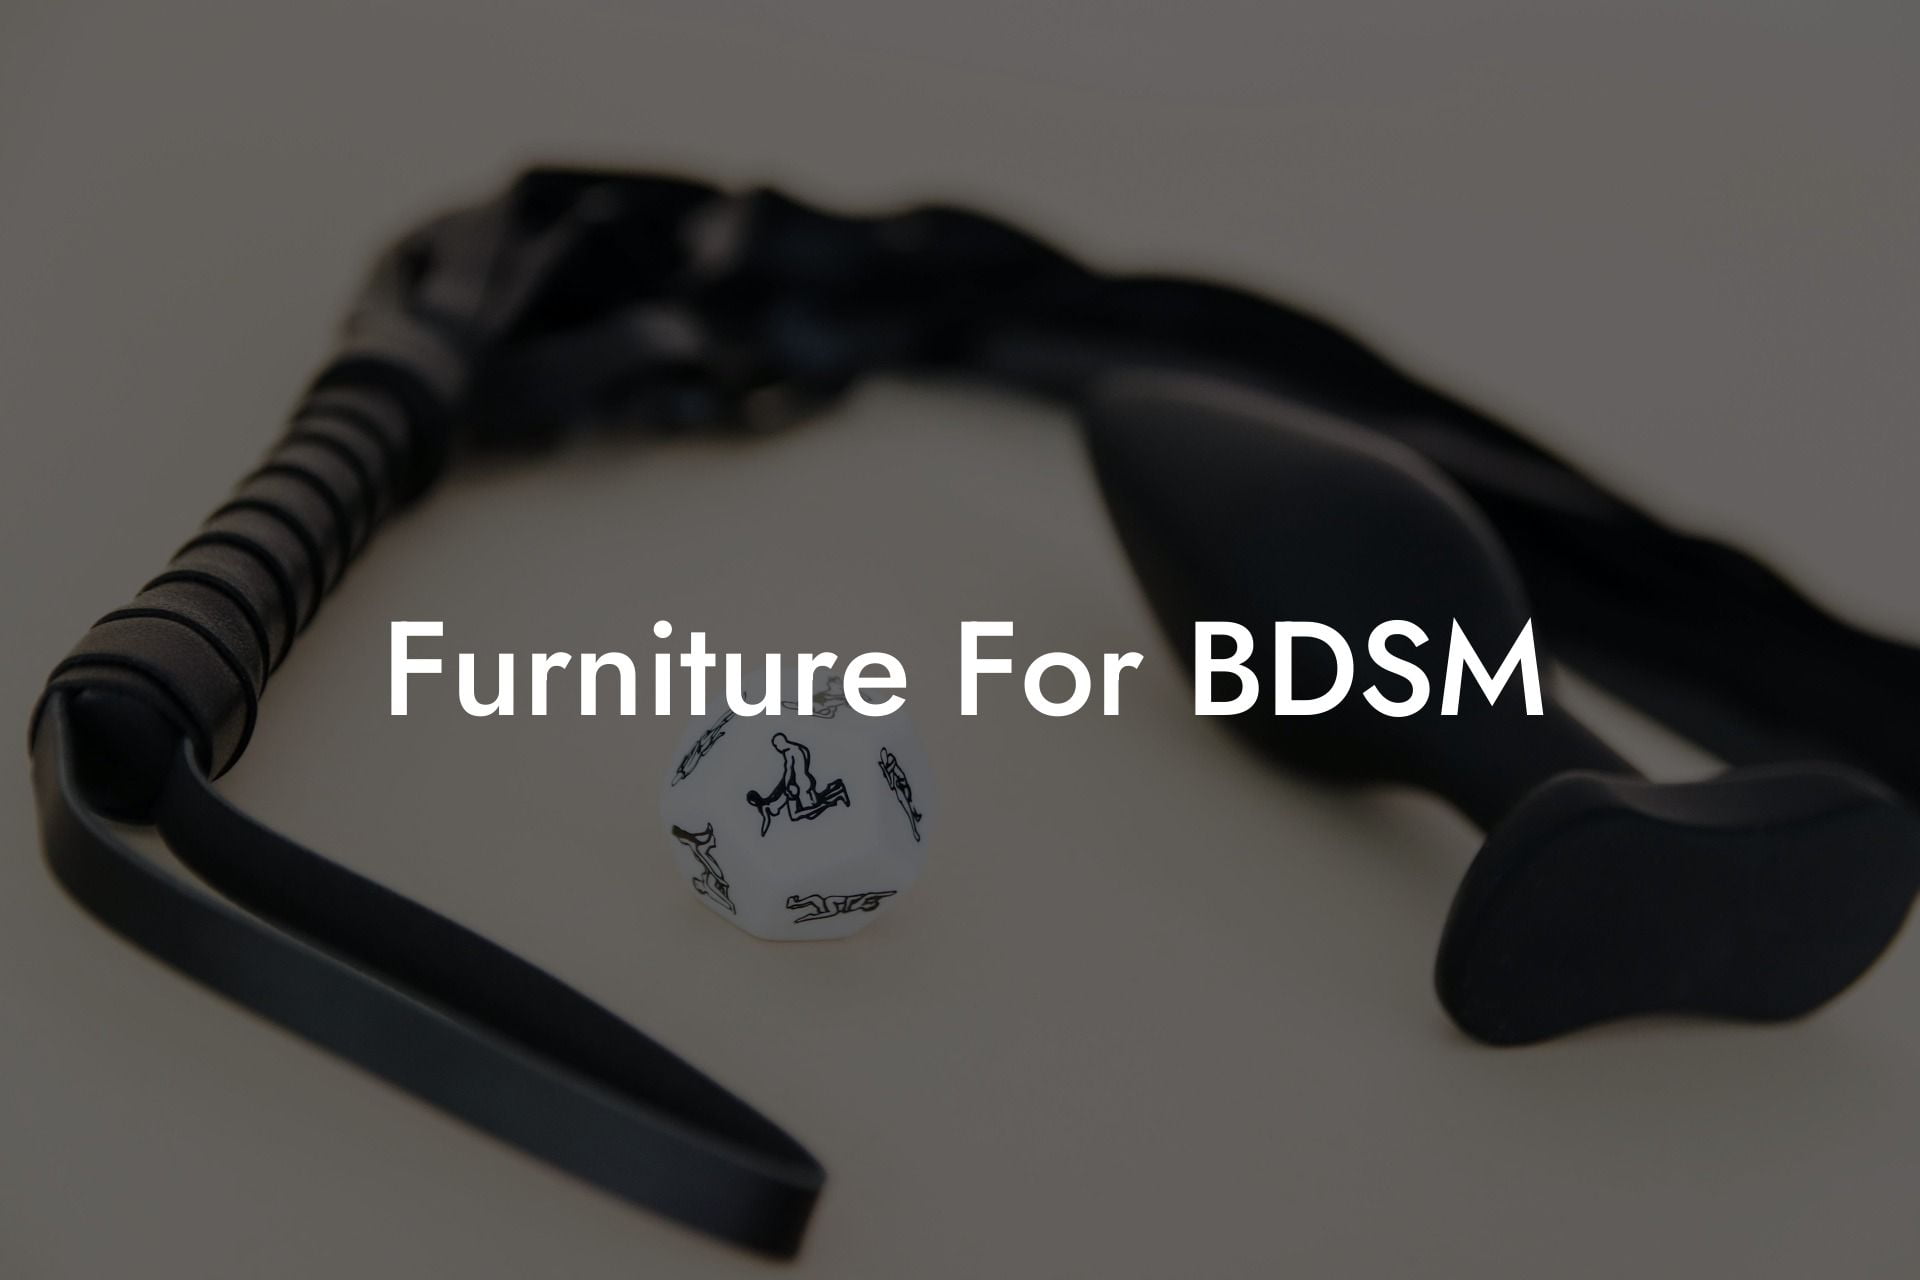 Furniture For BDSM